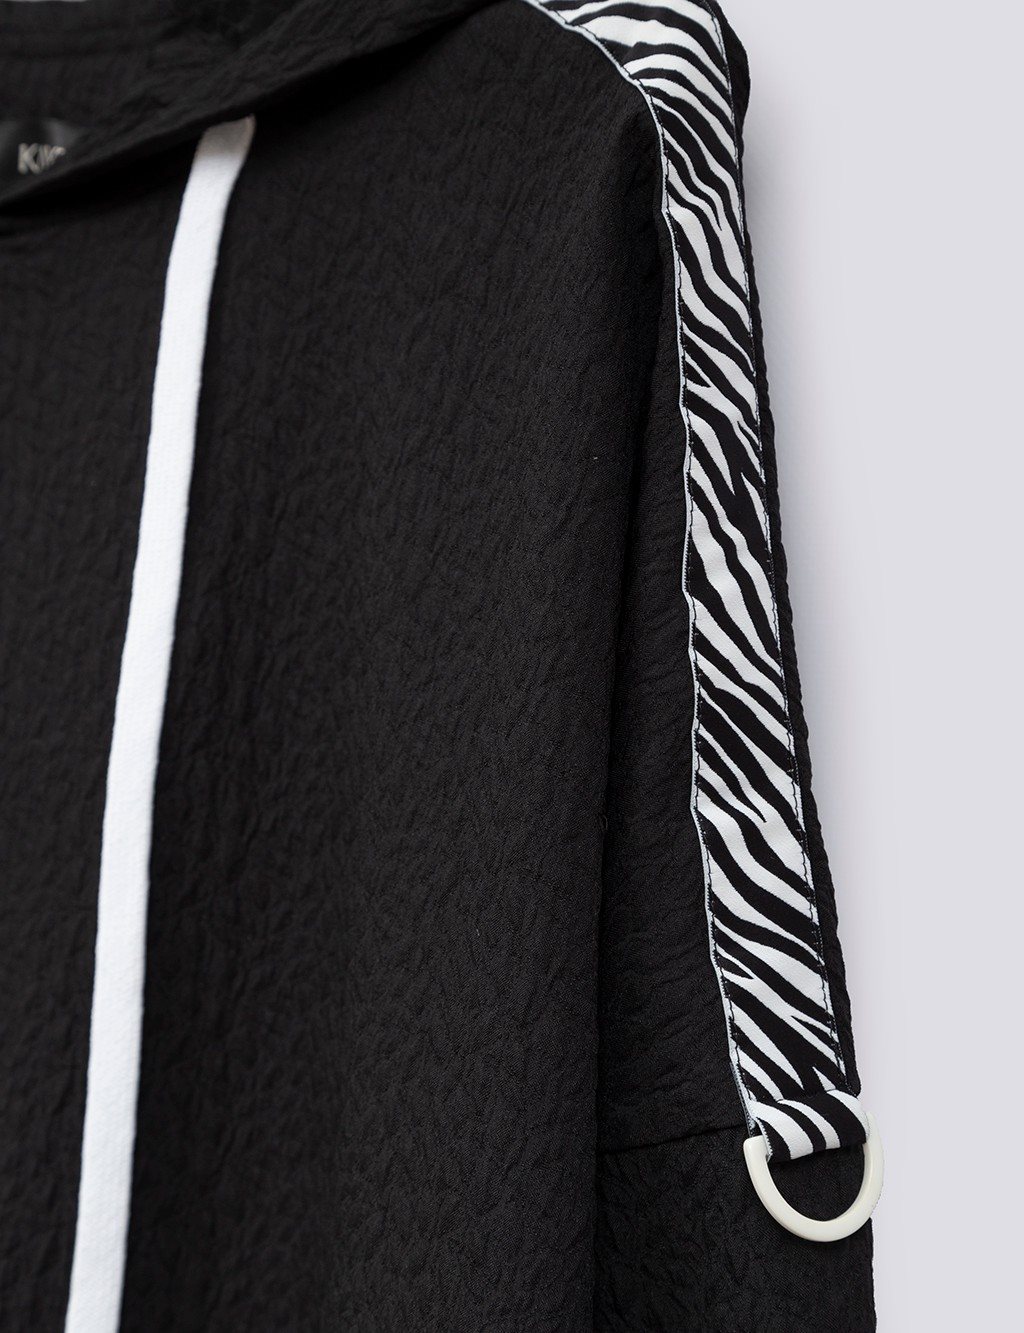 Stripe Detailed Hoodie Sweatshirt Black